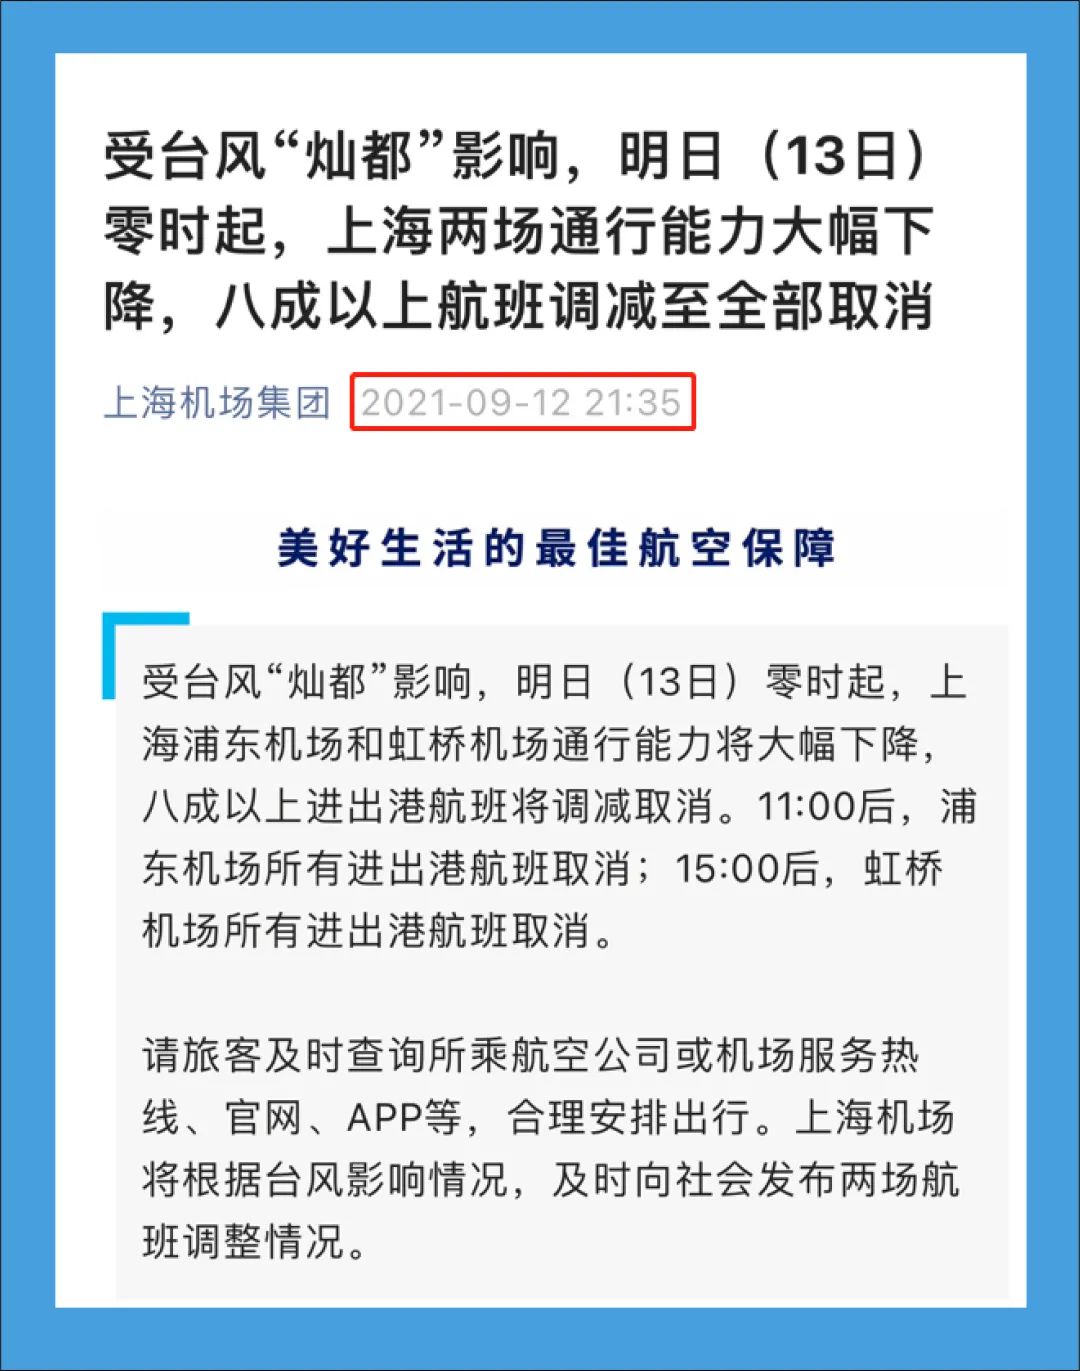 【注意】上海浦东和虹桥机场运行正常，网传信息不属实-万博·体育(ManBetX)